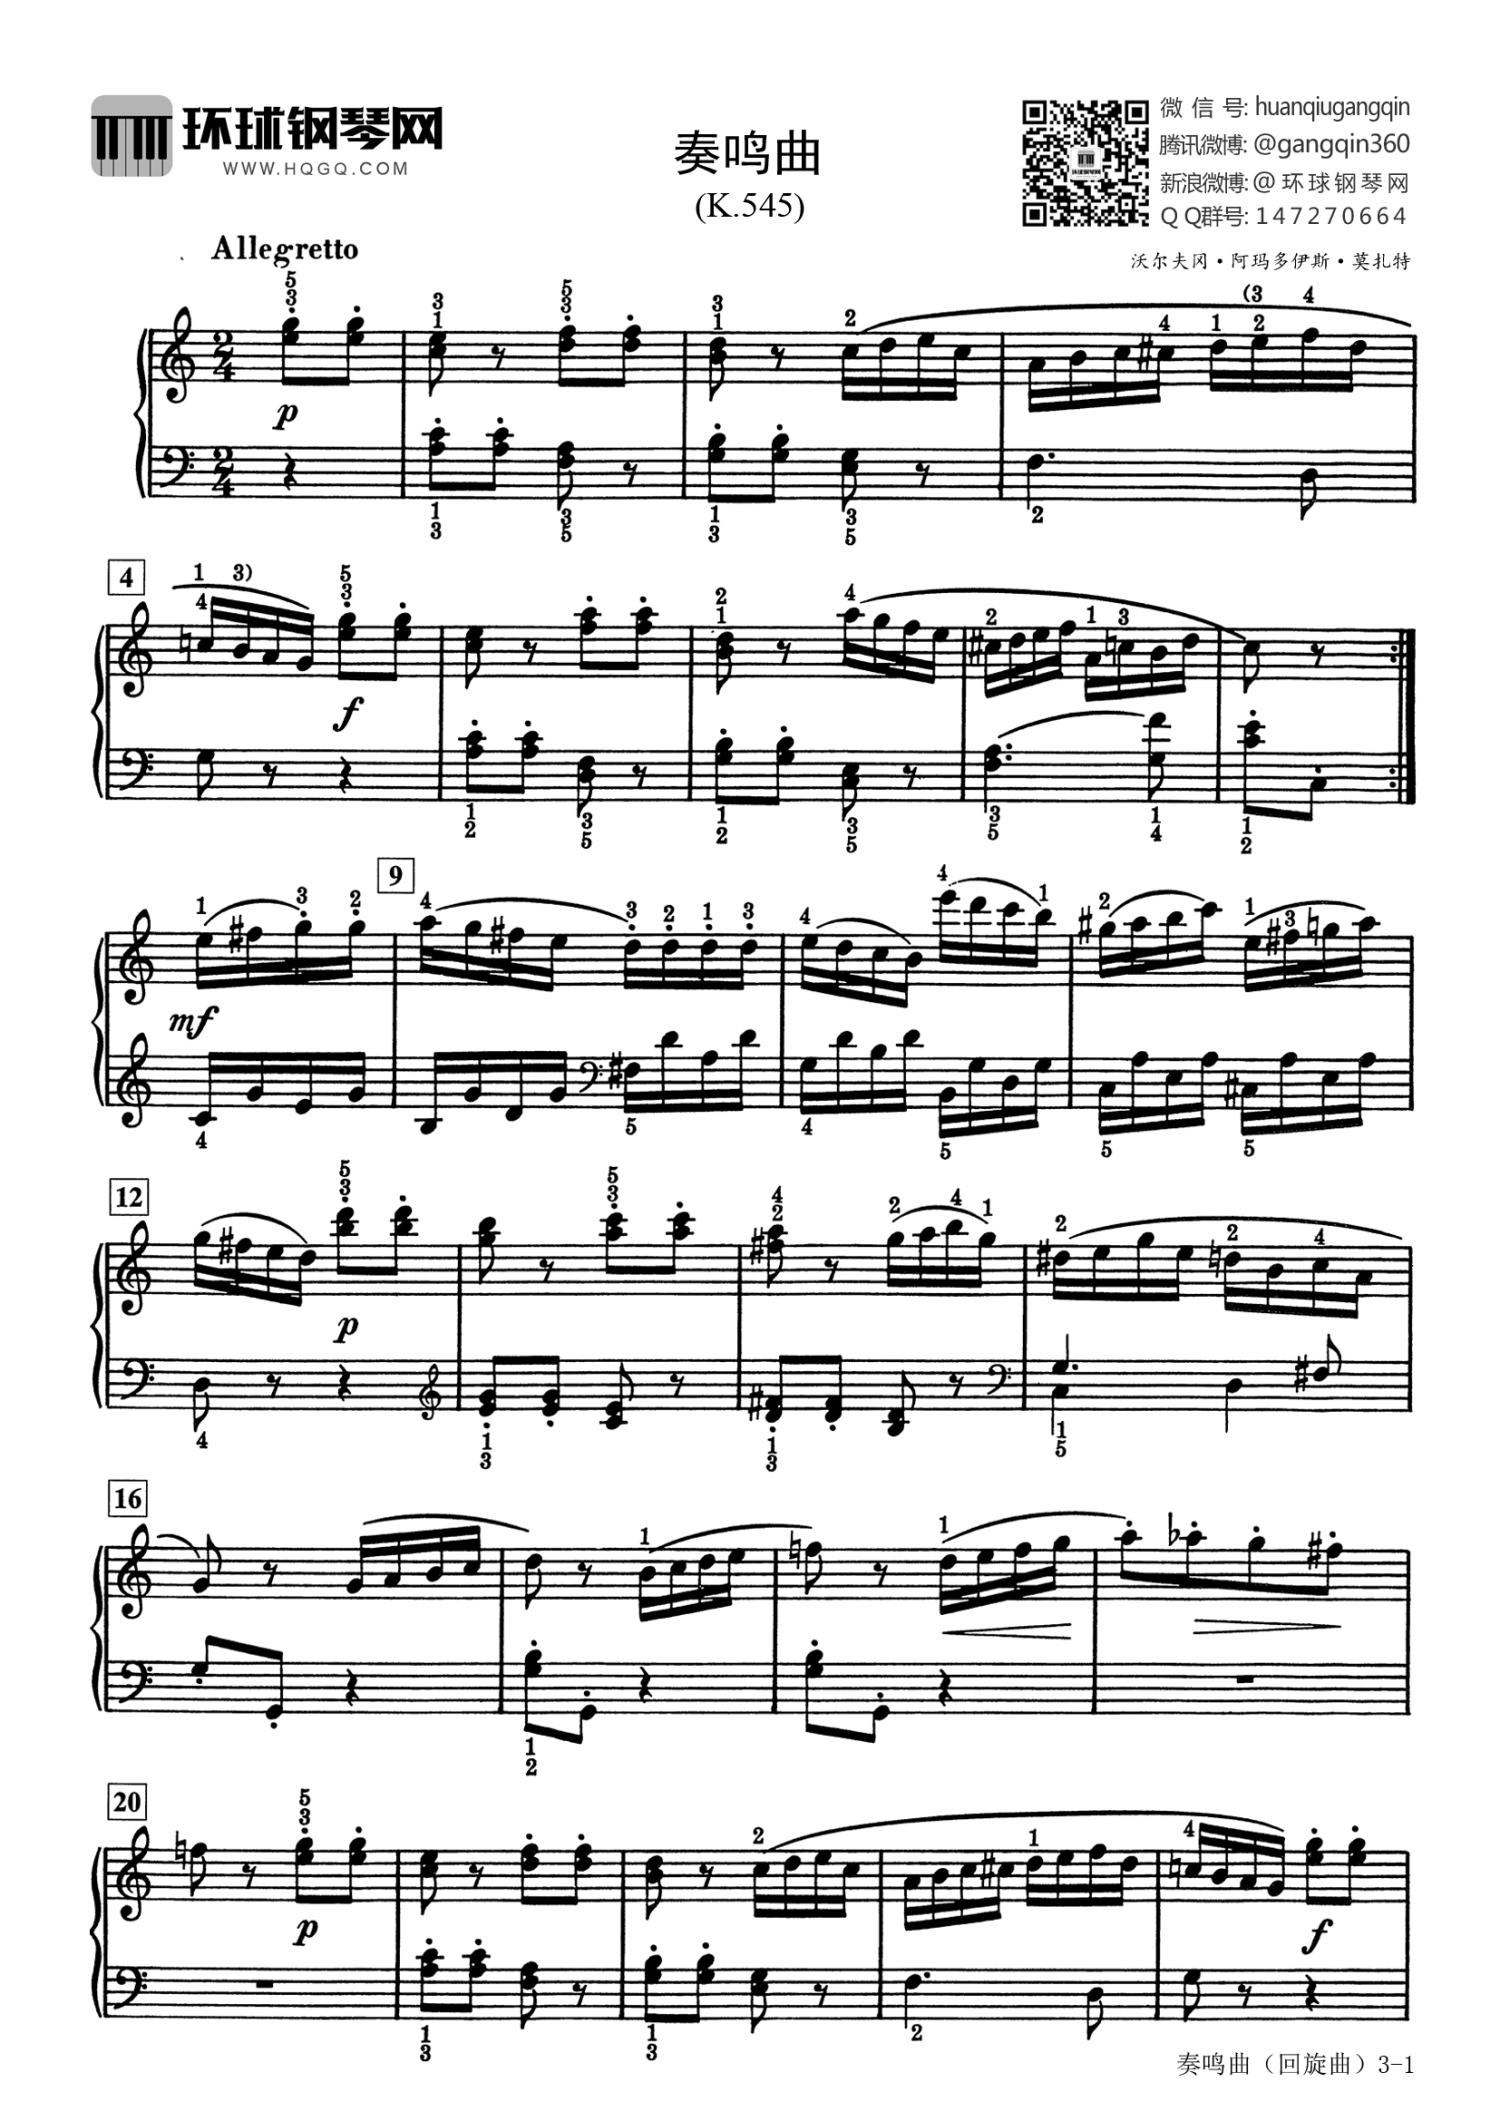 莫扎特k545奏鸣曲allegretto钢琴谱